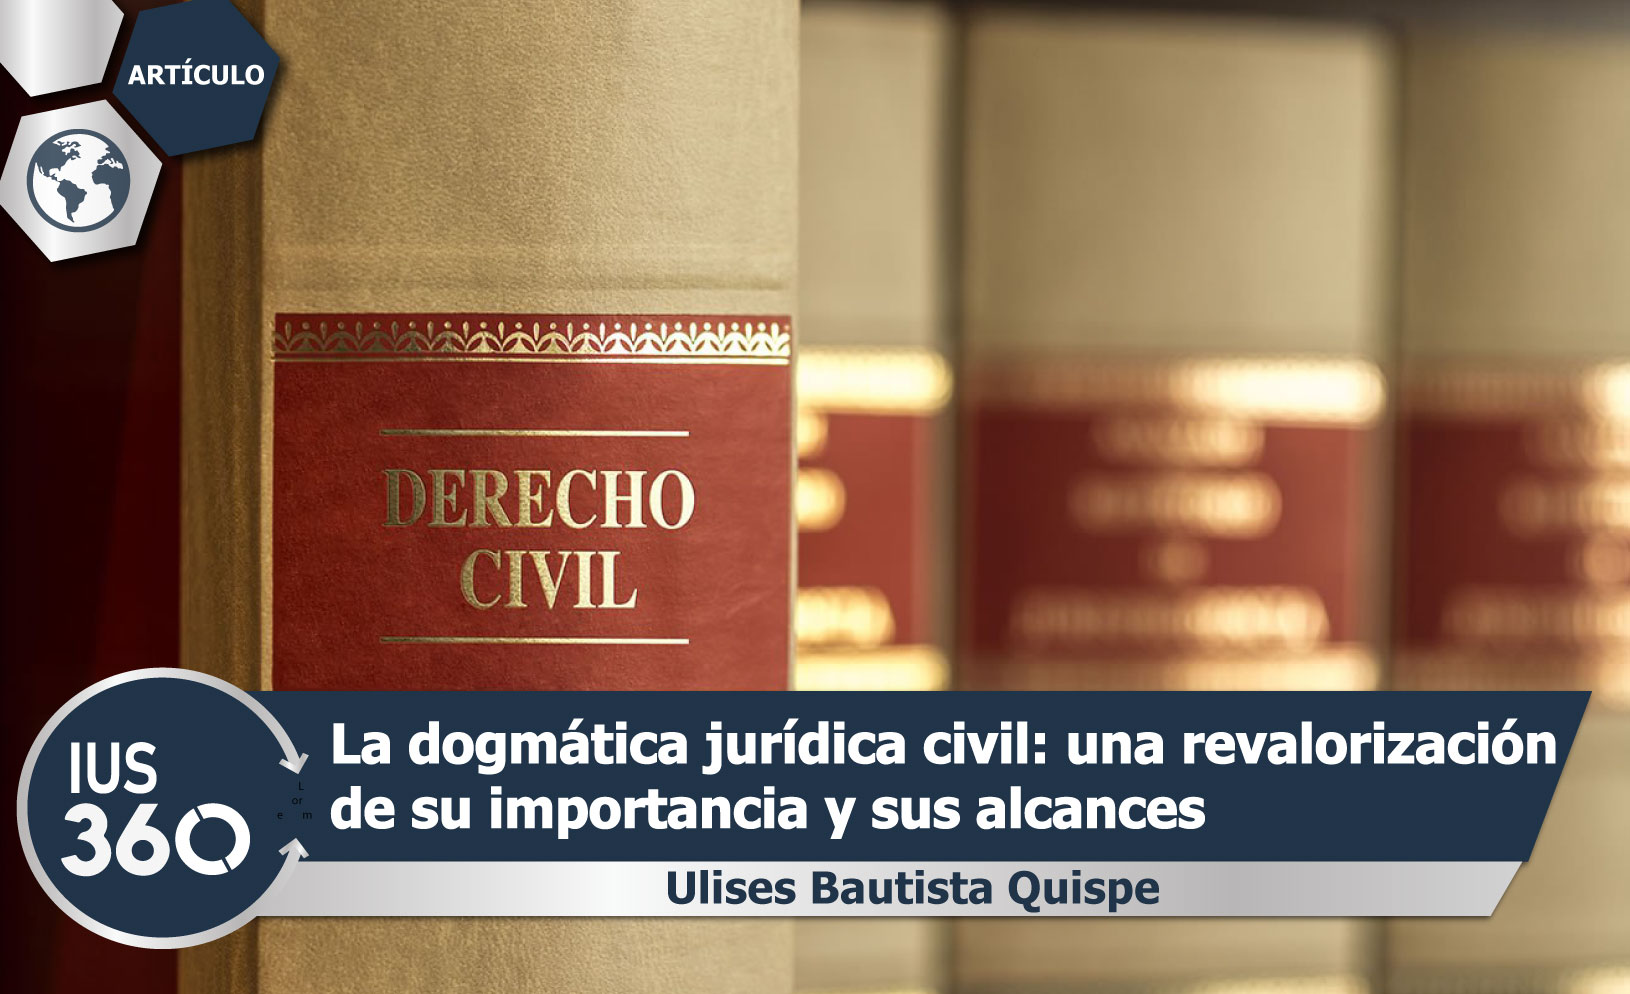 La dogmática jurídica civil: una revalorización de su importancia y sus alcances